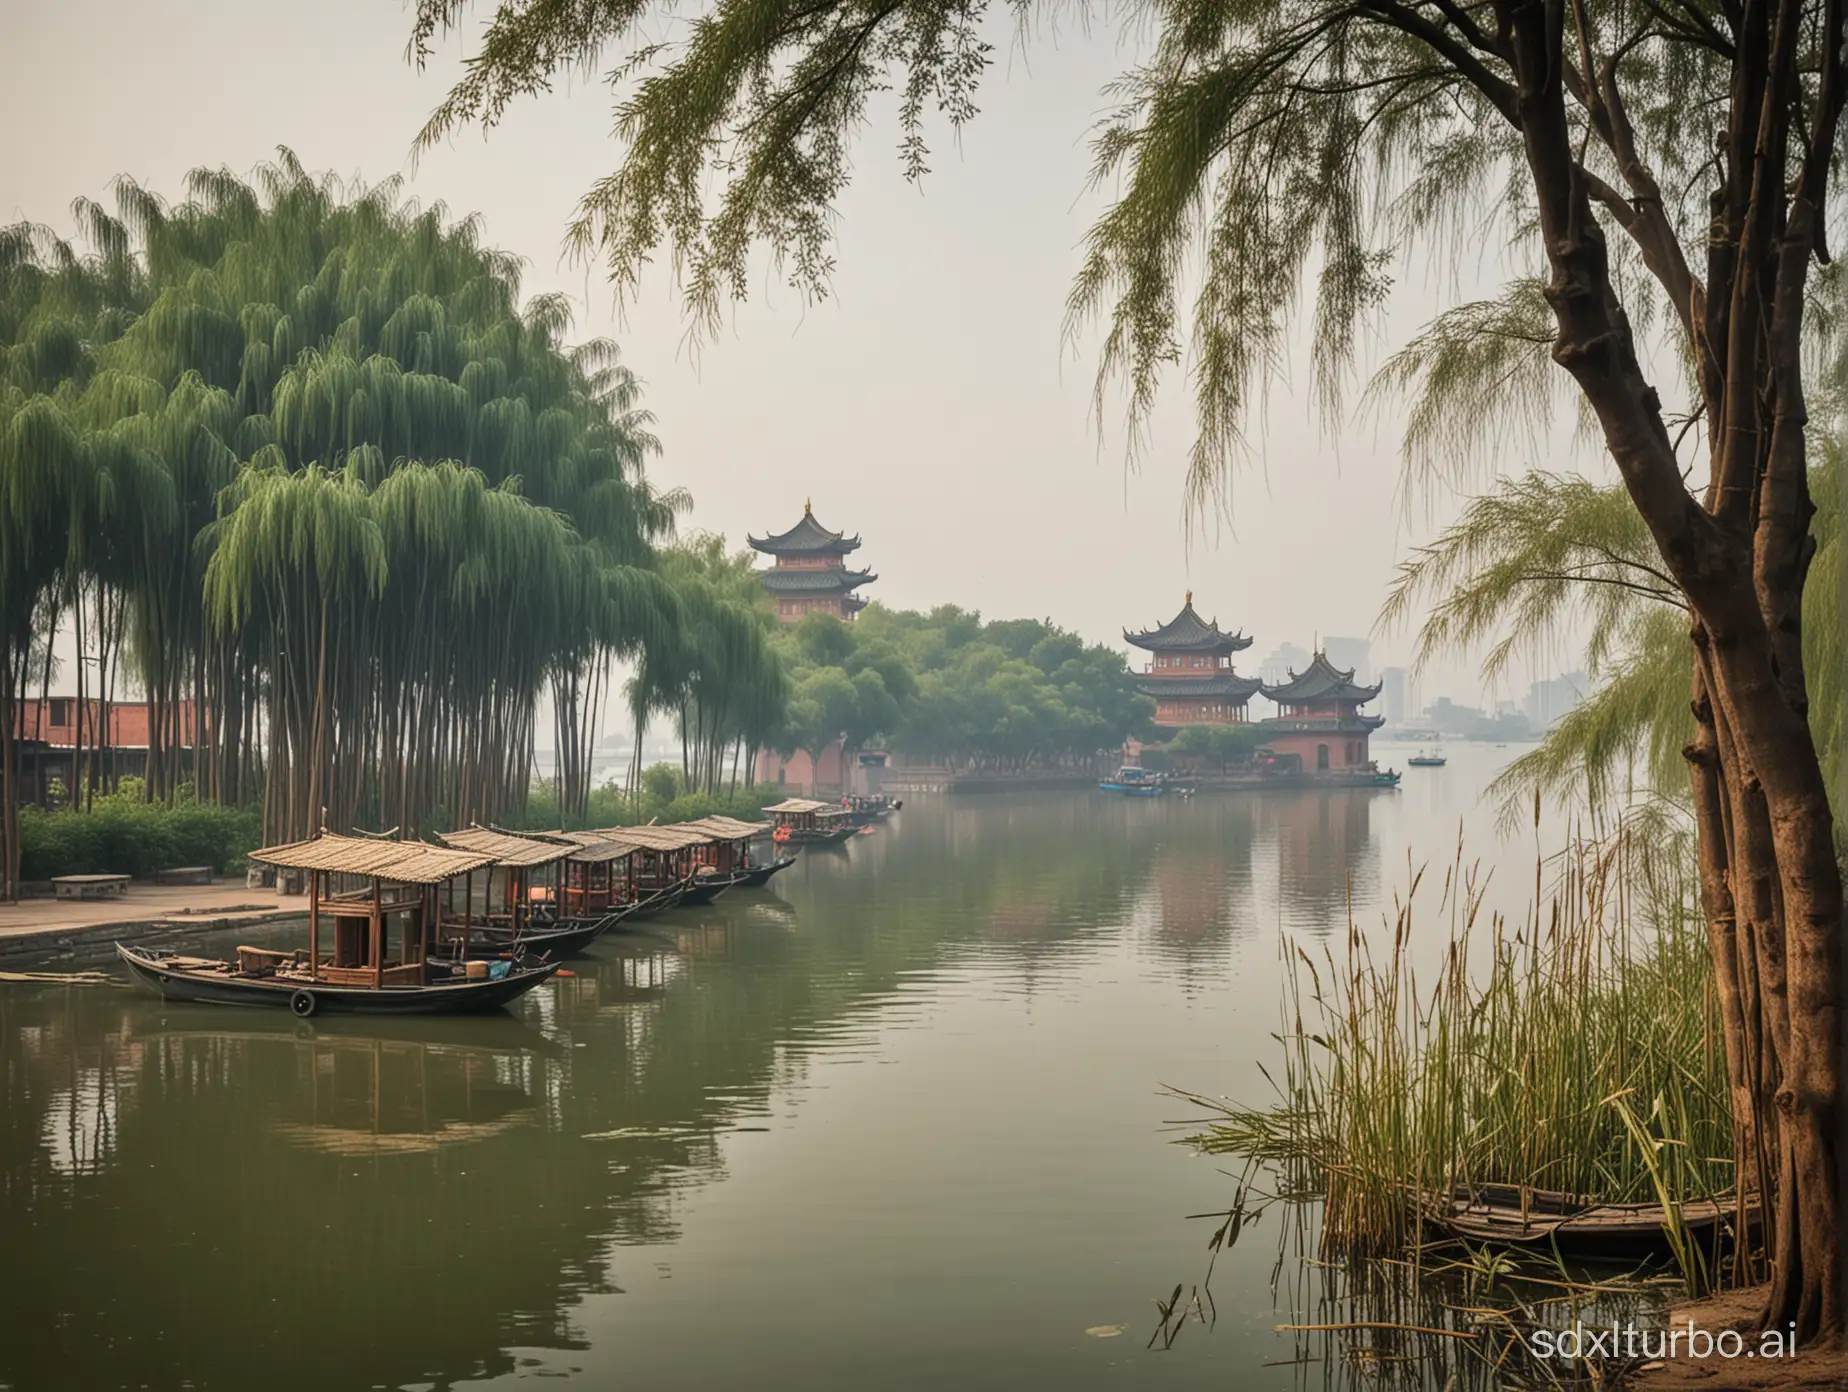 Yueyang Tower, Dongting Lake, boats, trees, reeds, Hunan, China.